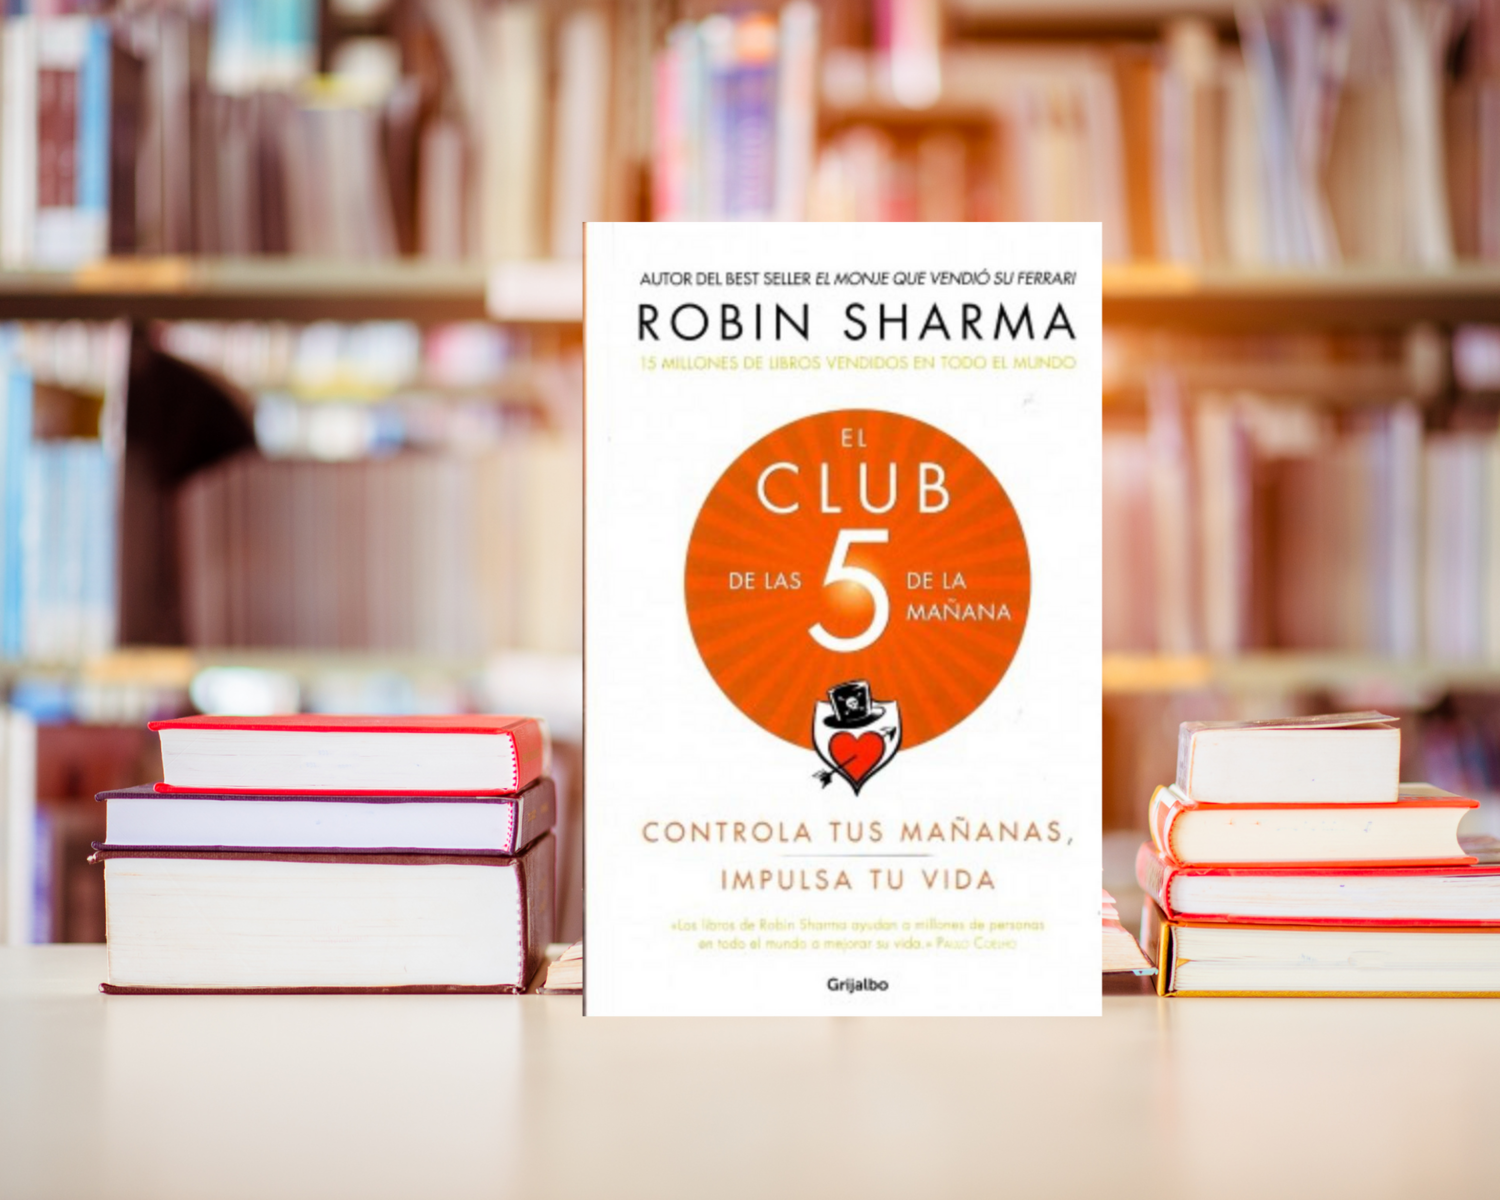 El club de las 5 de la mañana (Robin Sharma) –